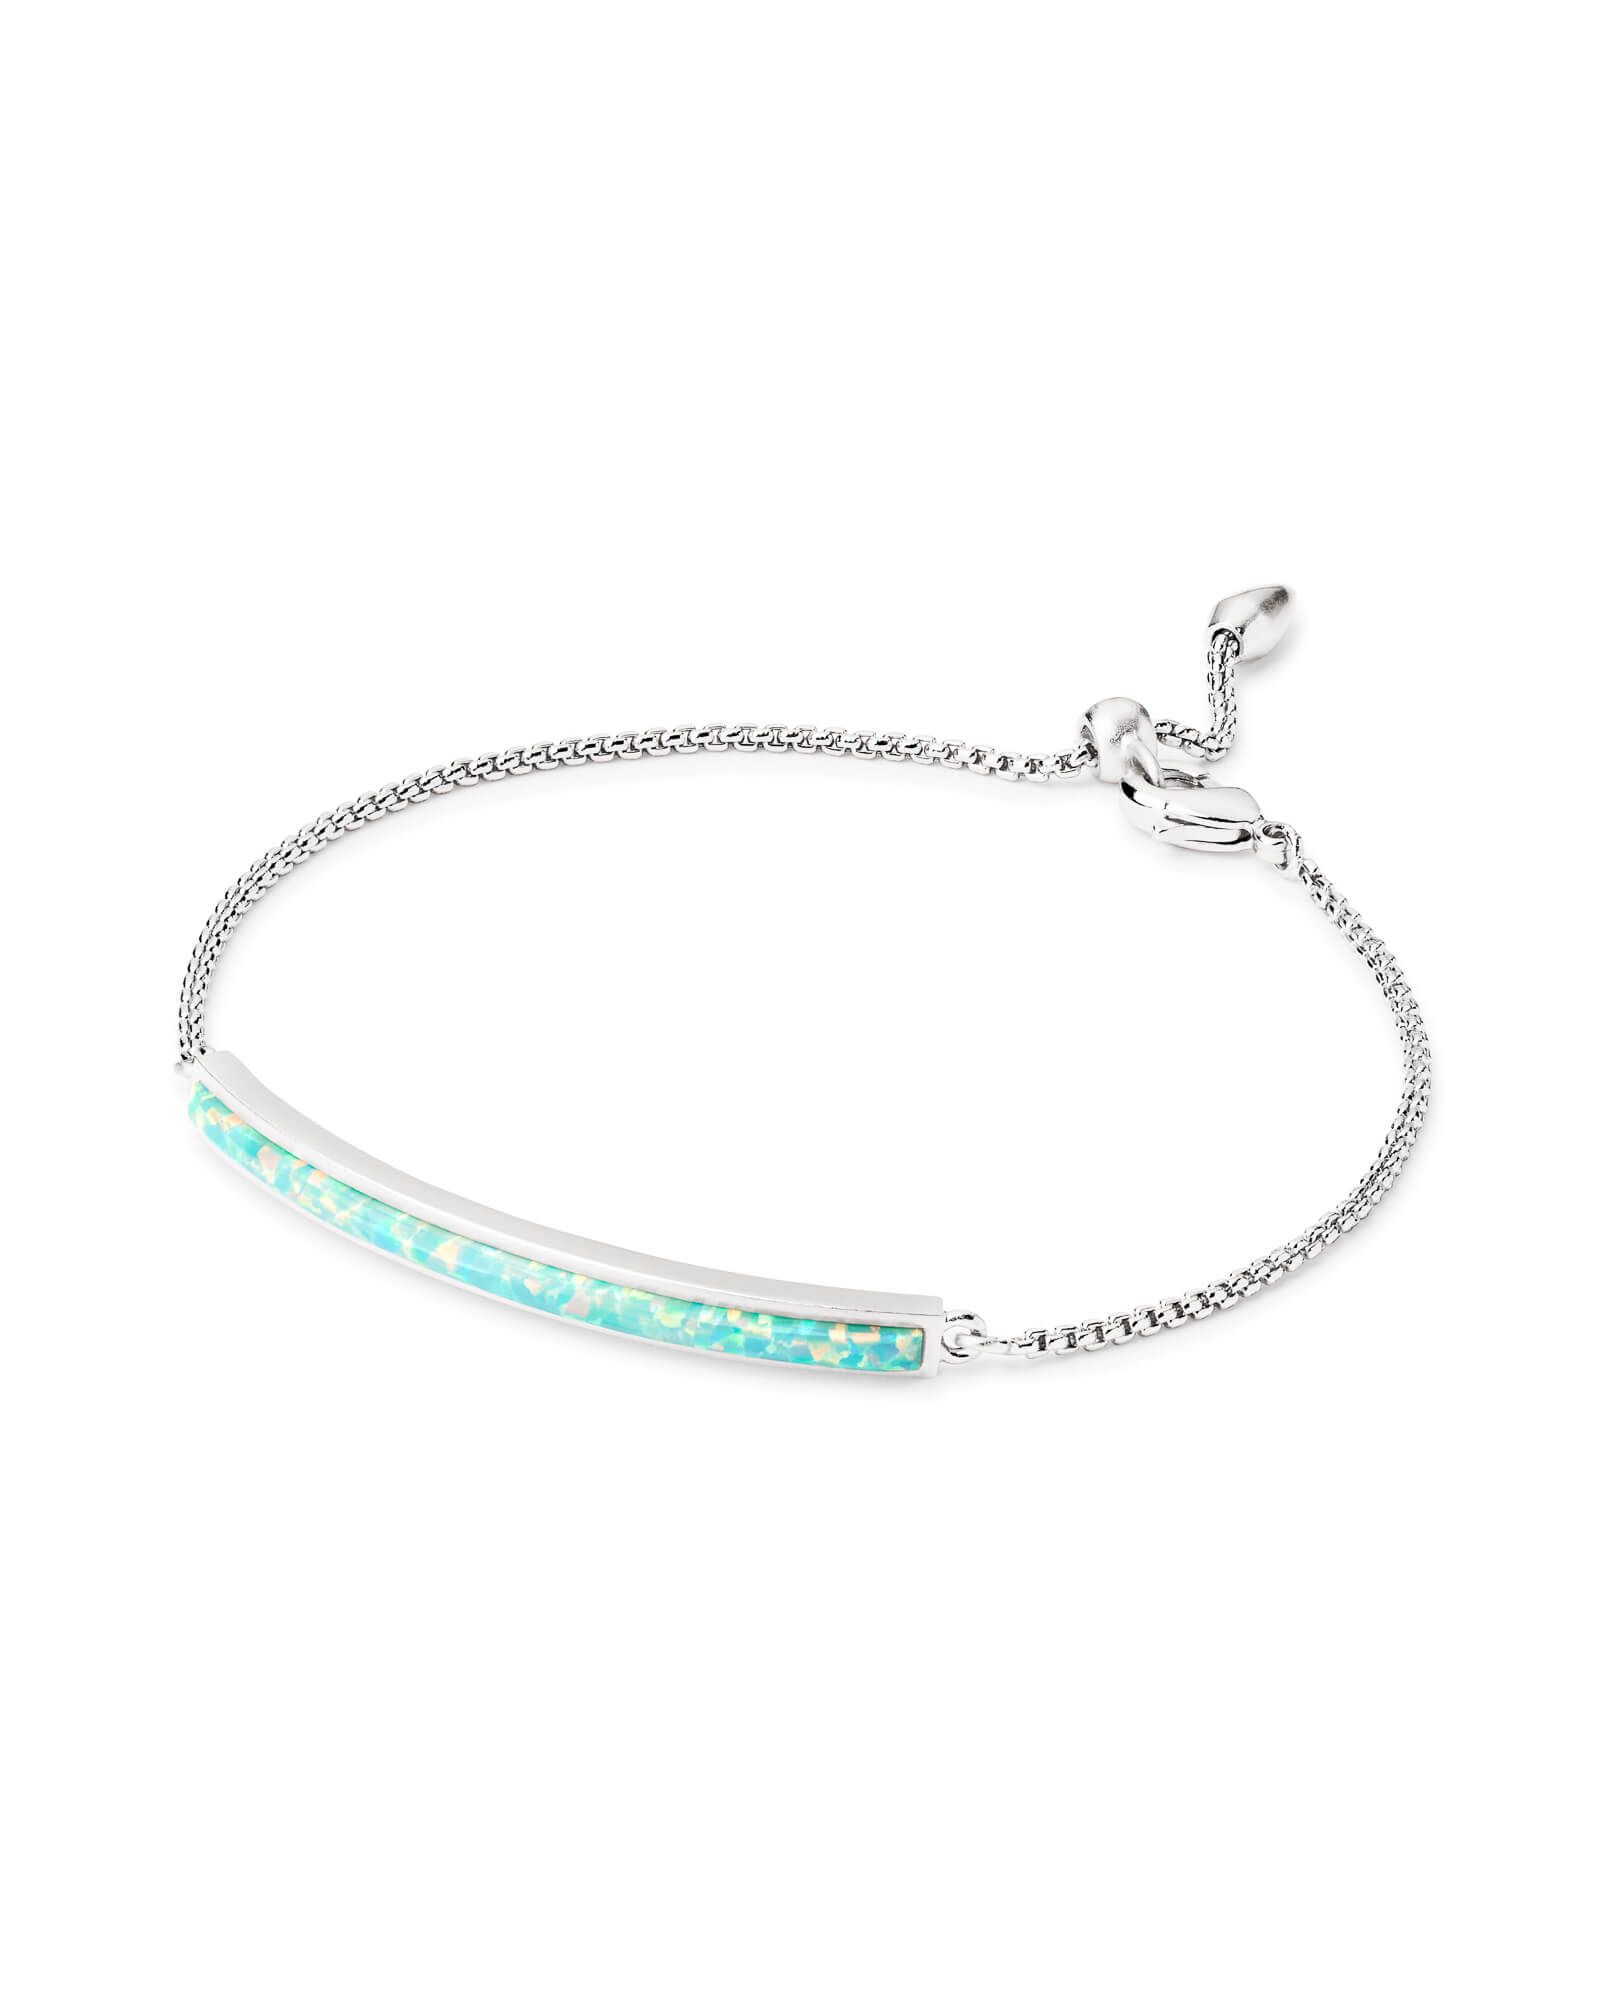 Eloise Ann Bright Silver Chain Bracelet in Mint Kyocera Opal | Kendra Scott